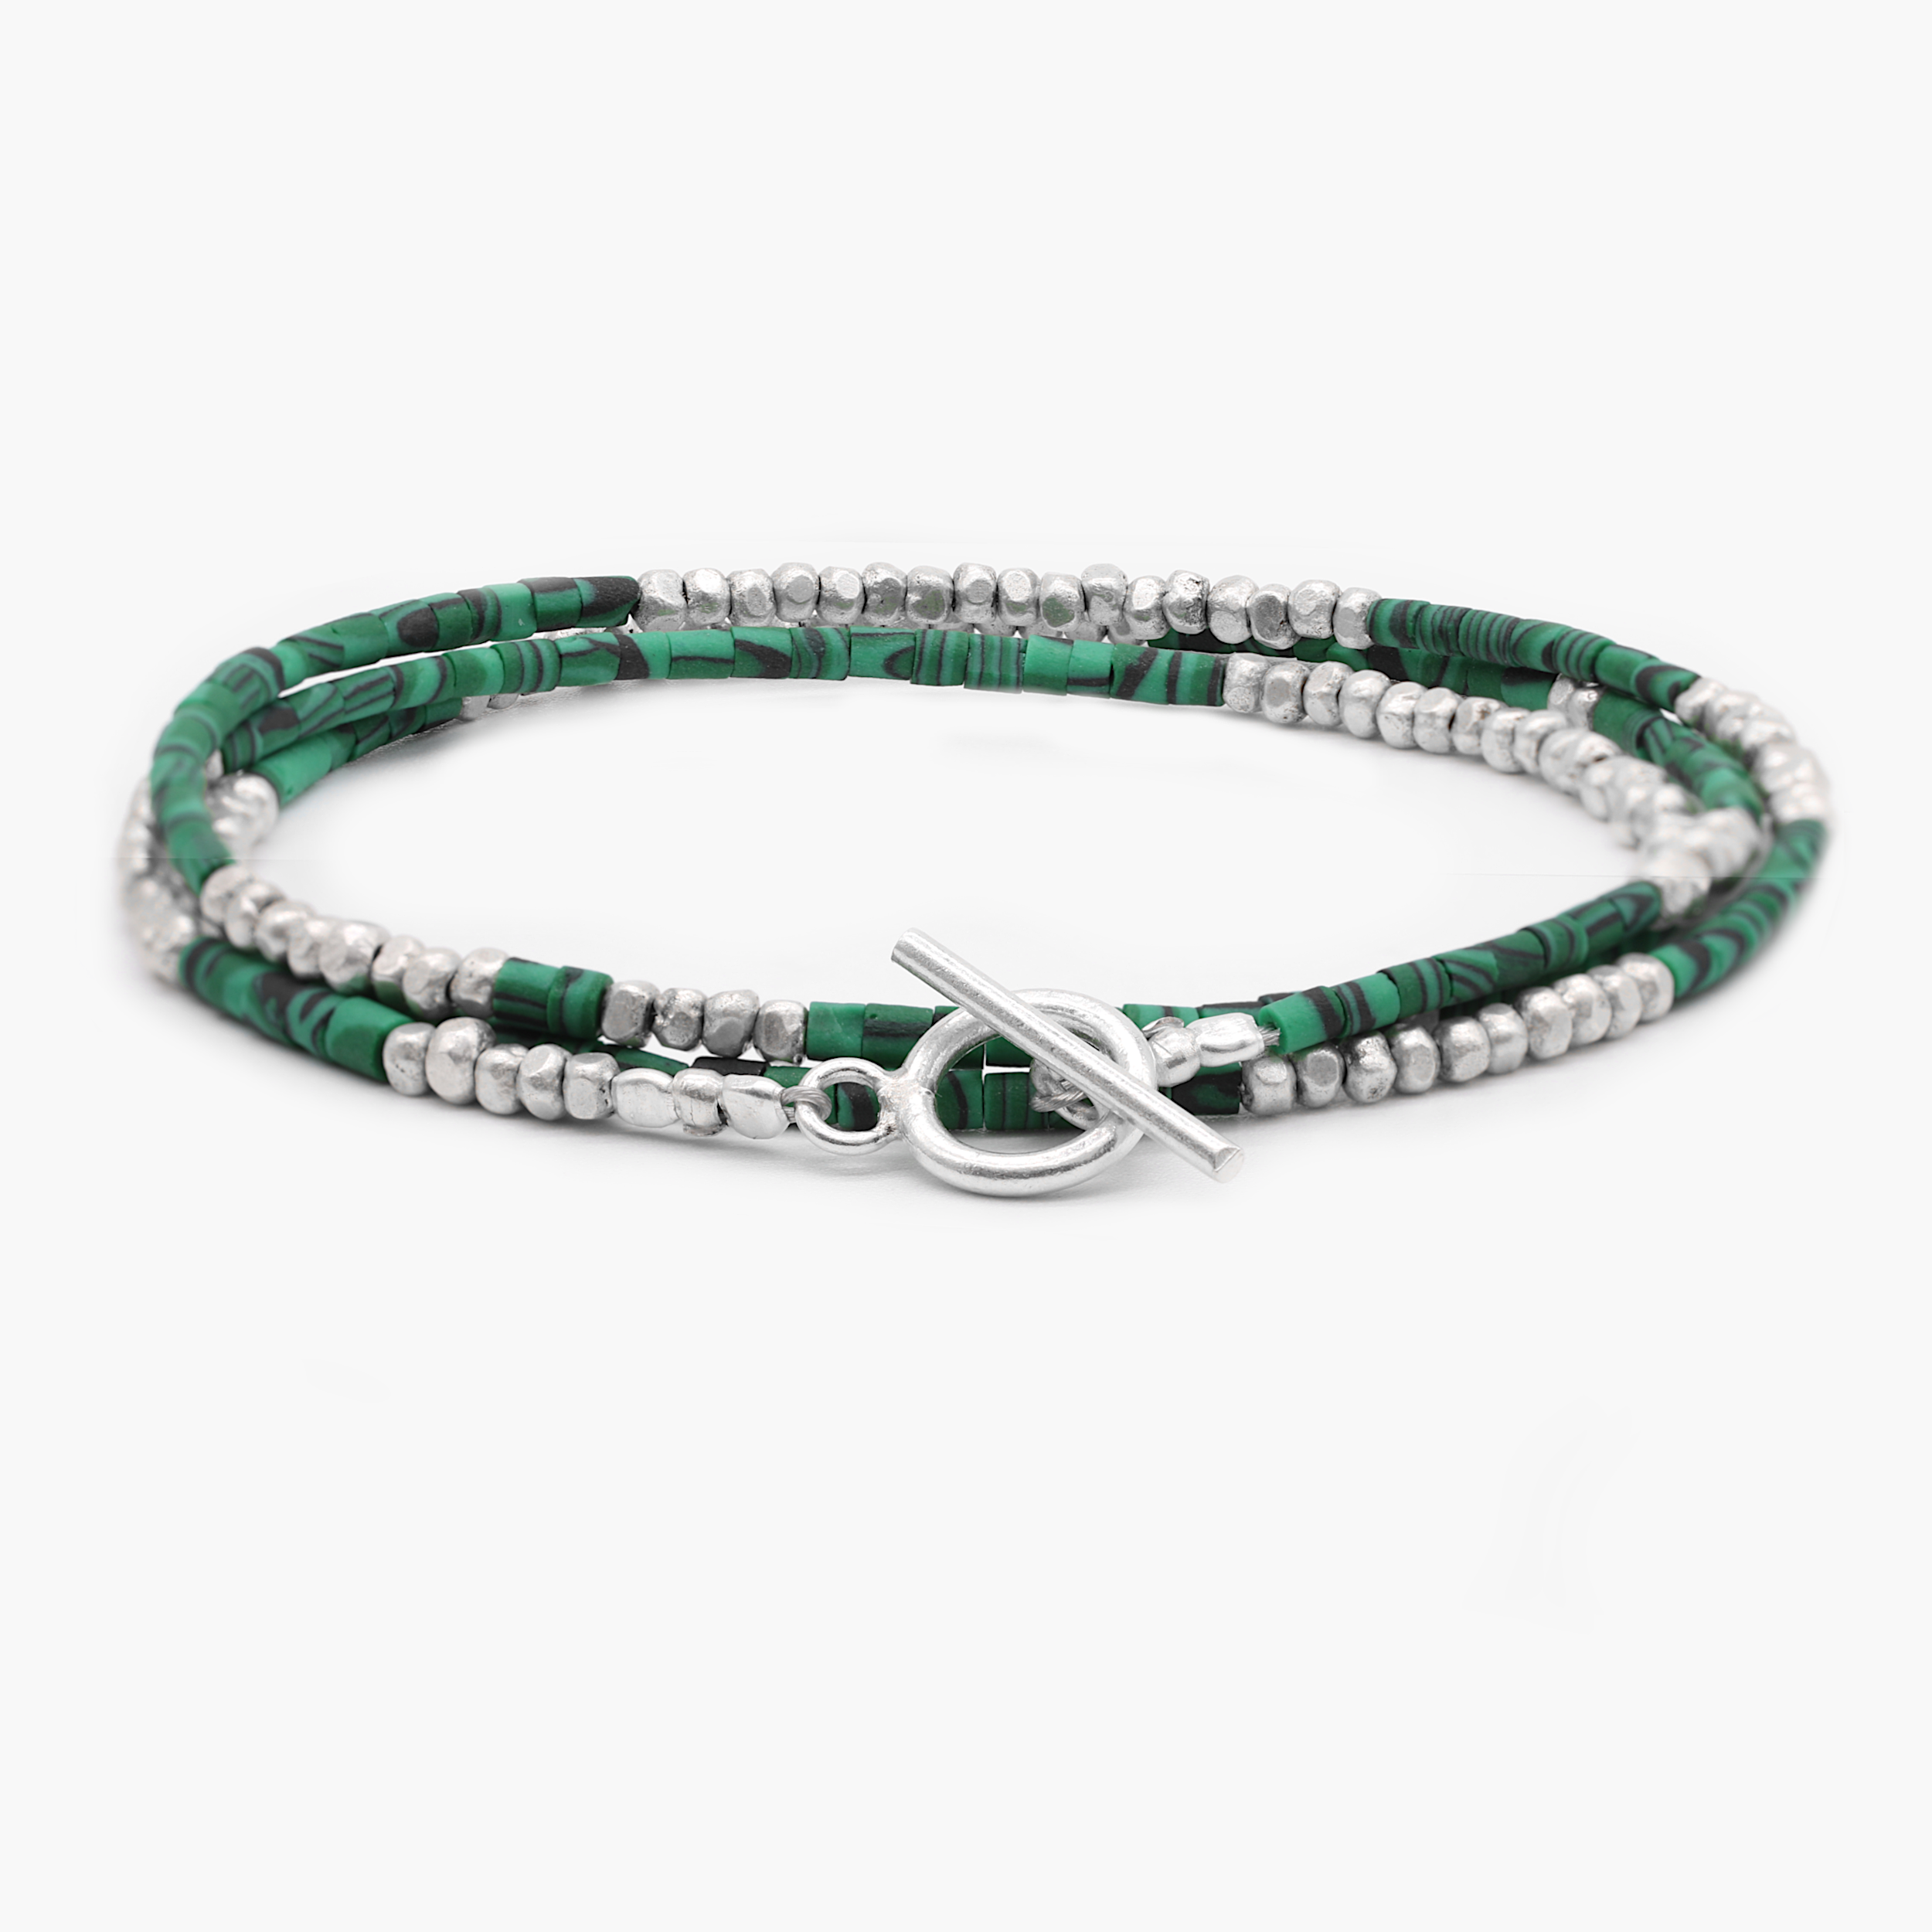 3 Laps Bracelet With Malachite And Sterling Silver Beads-Bracelet-Kompsós